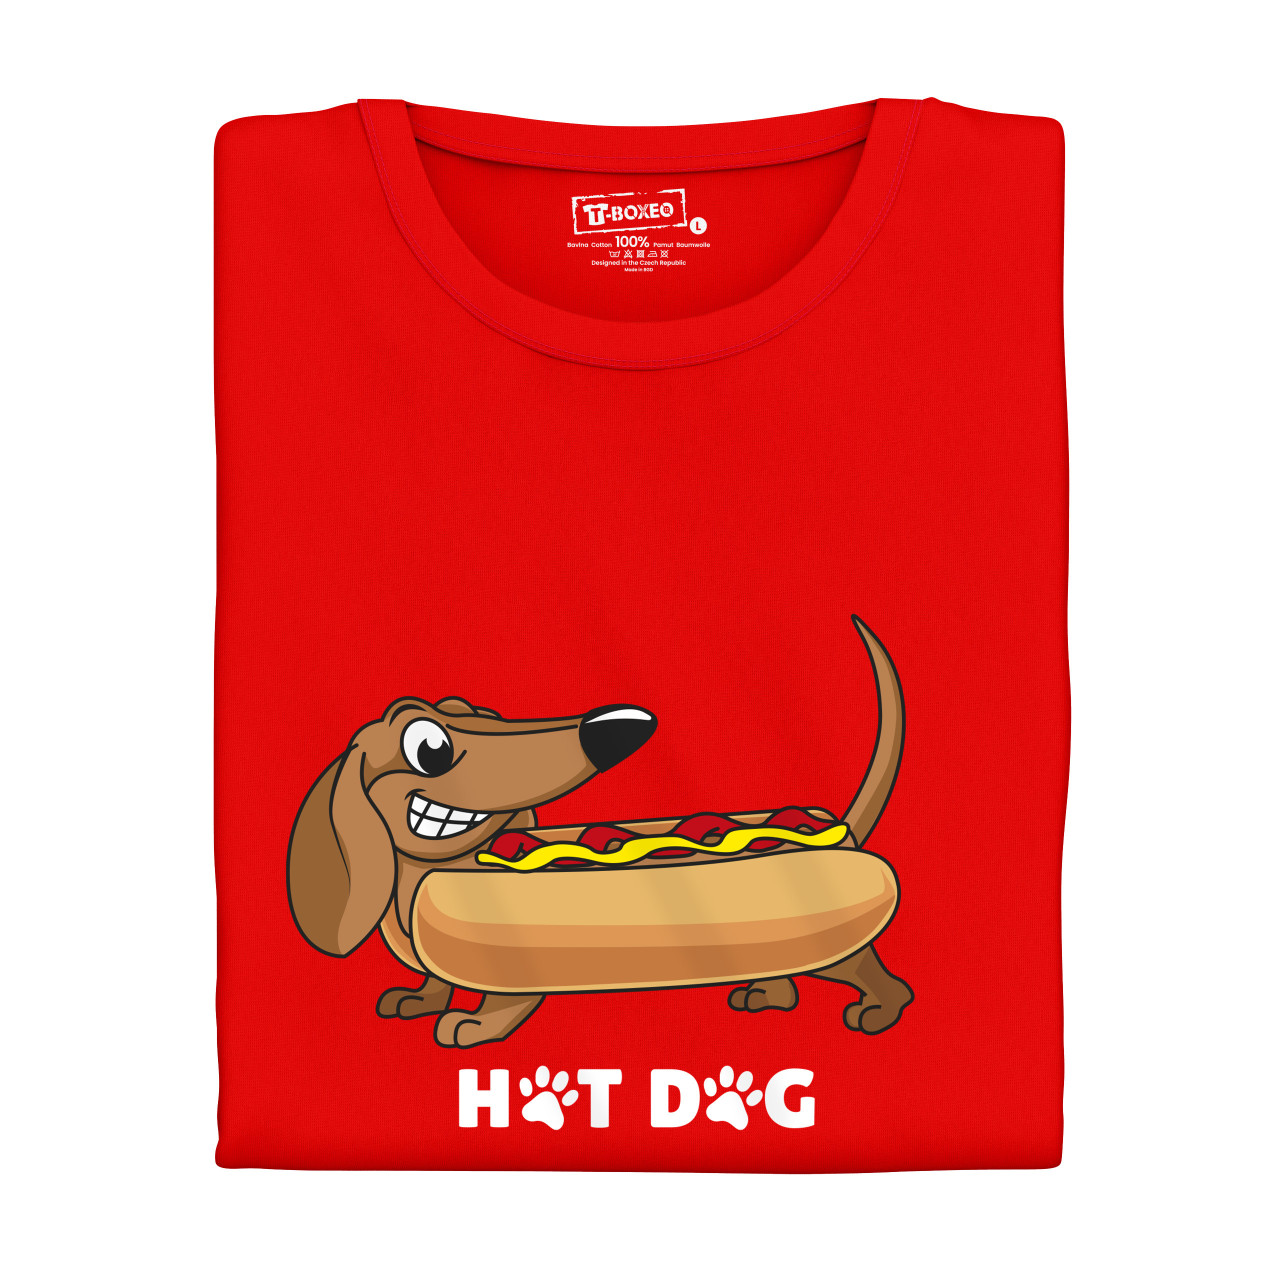 Pánské tričko s potiskem “Hot Dog”